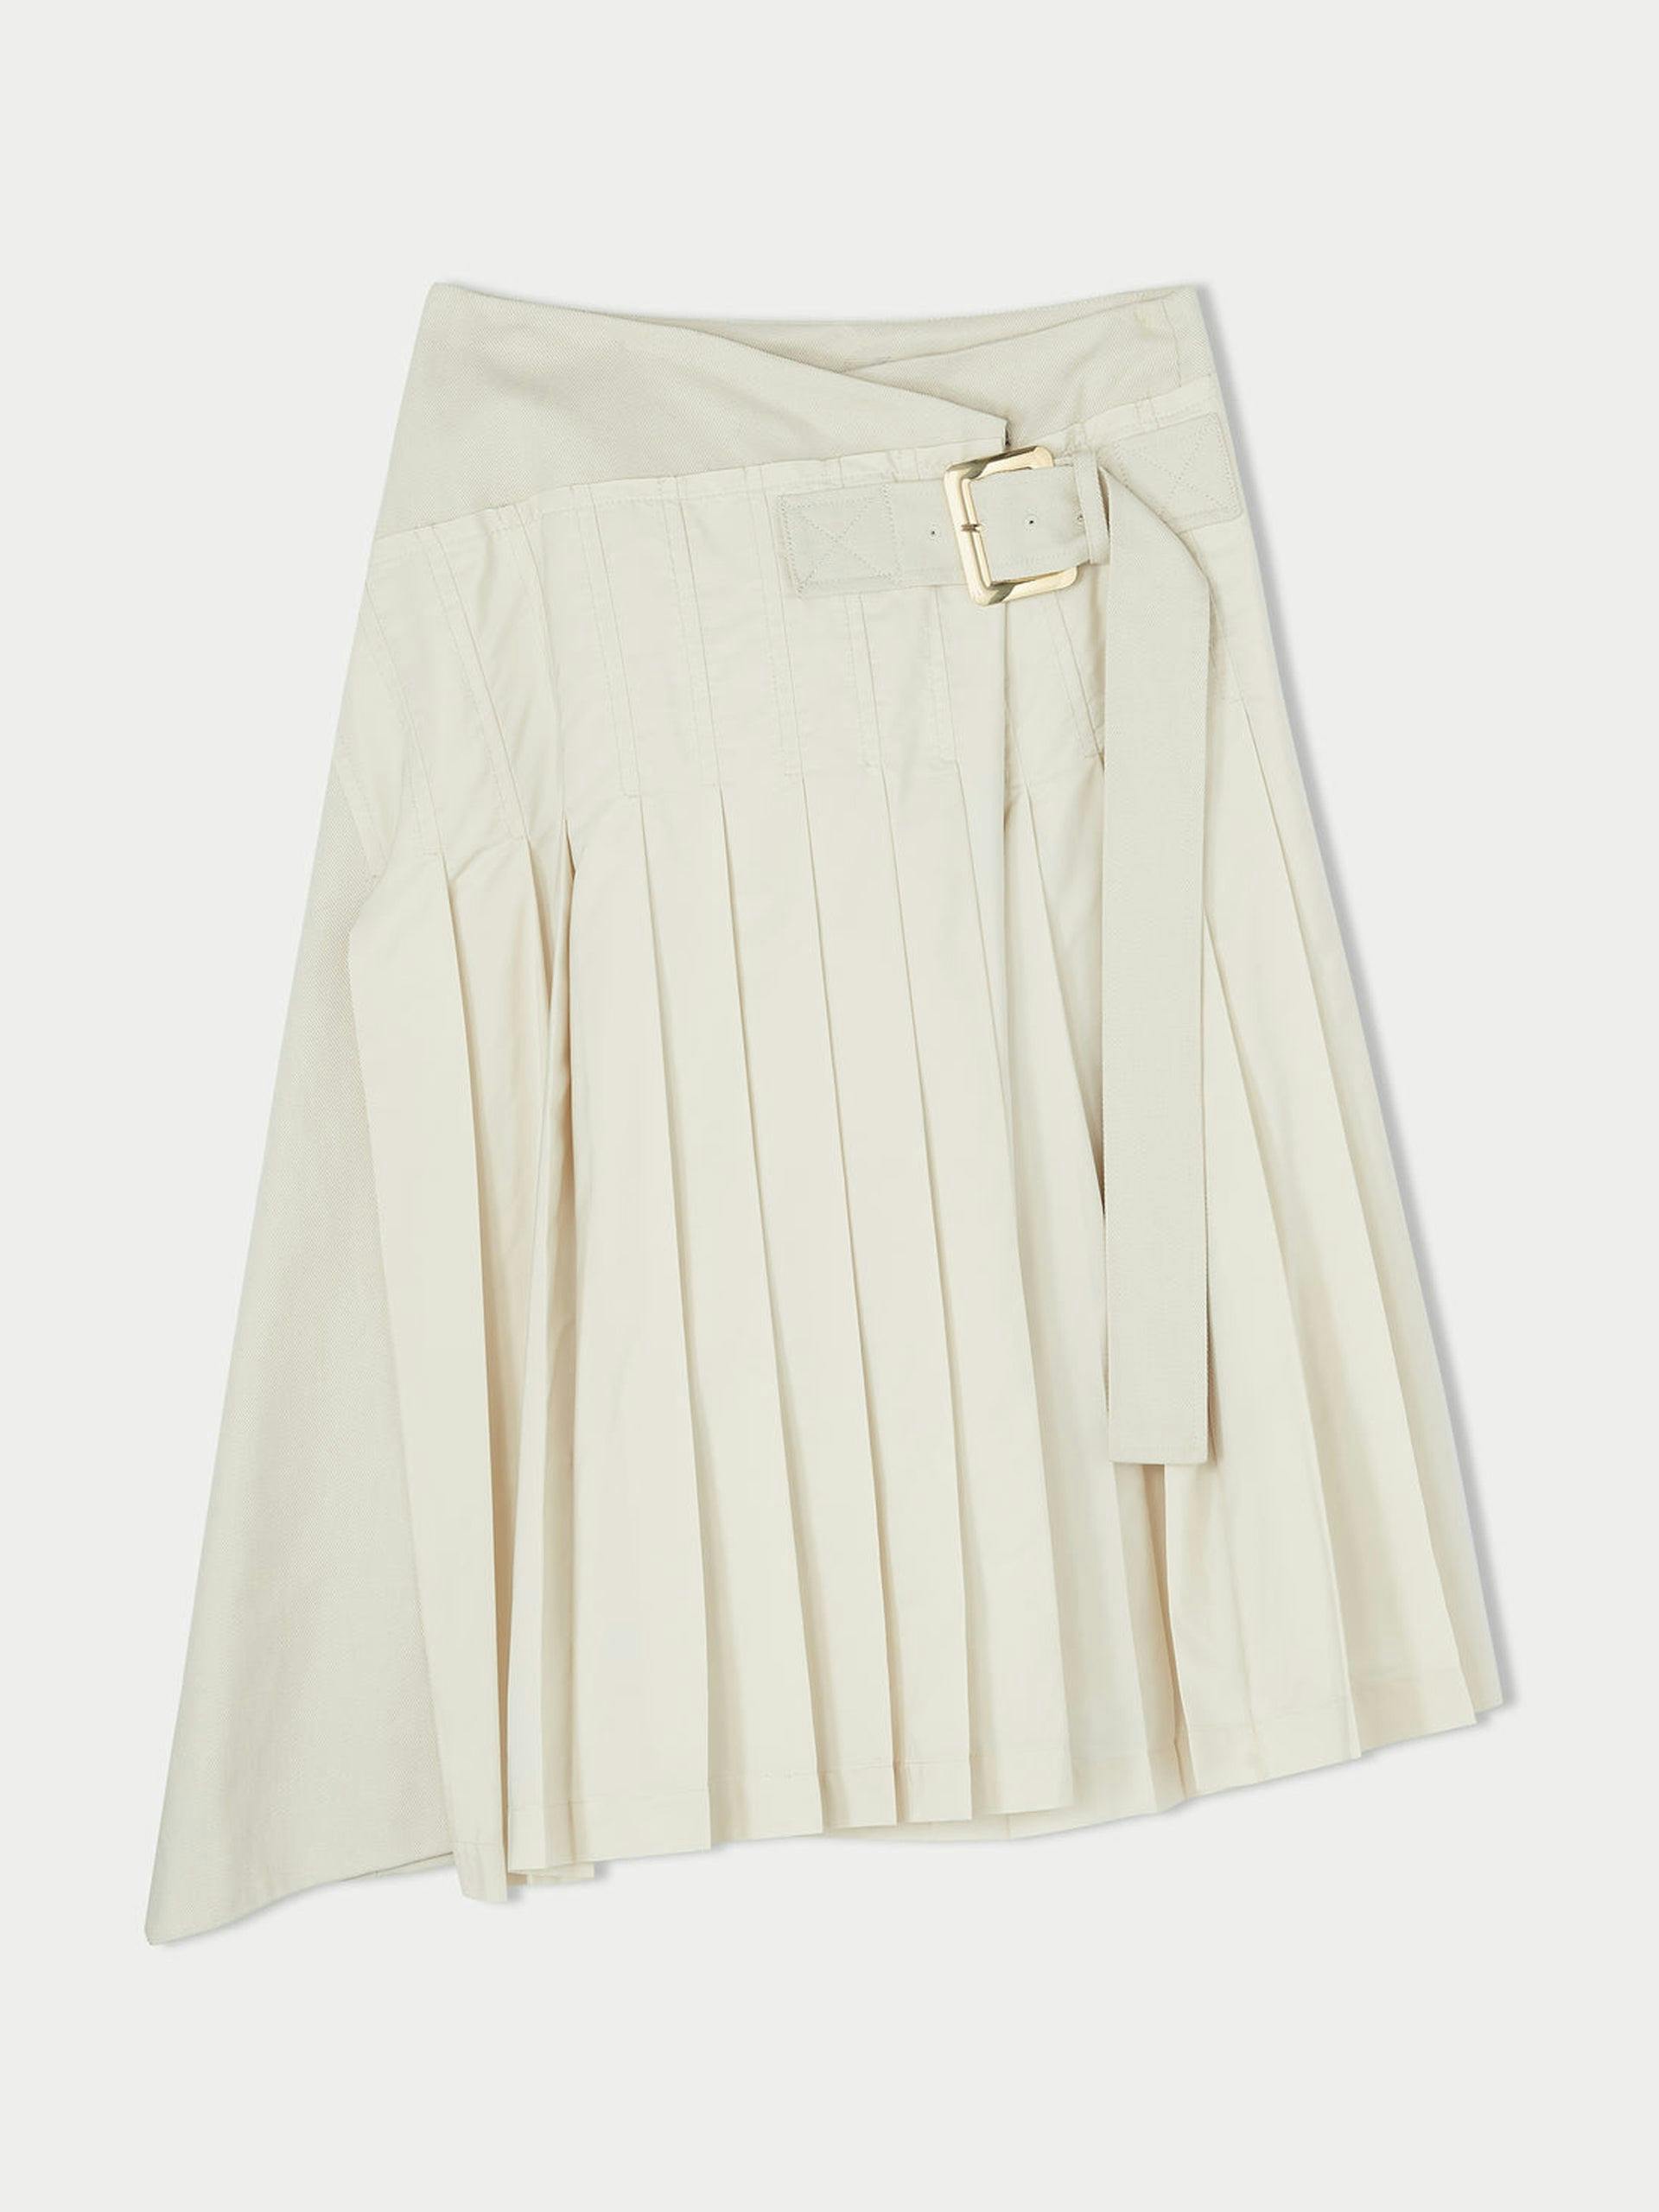 Pleated kilt skirt